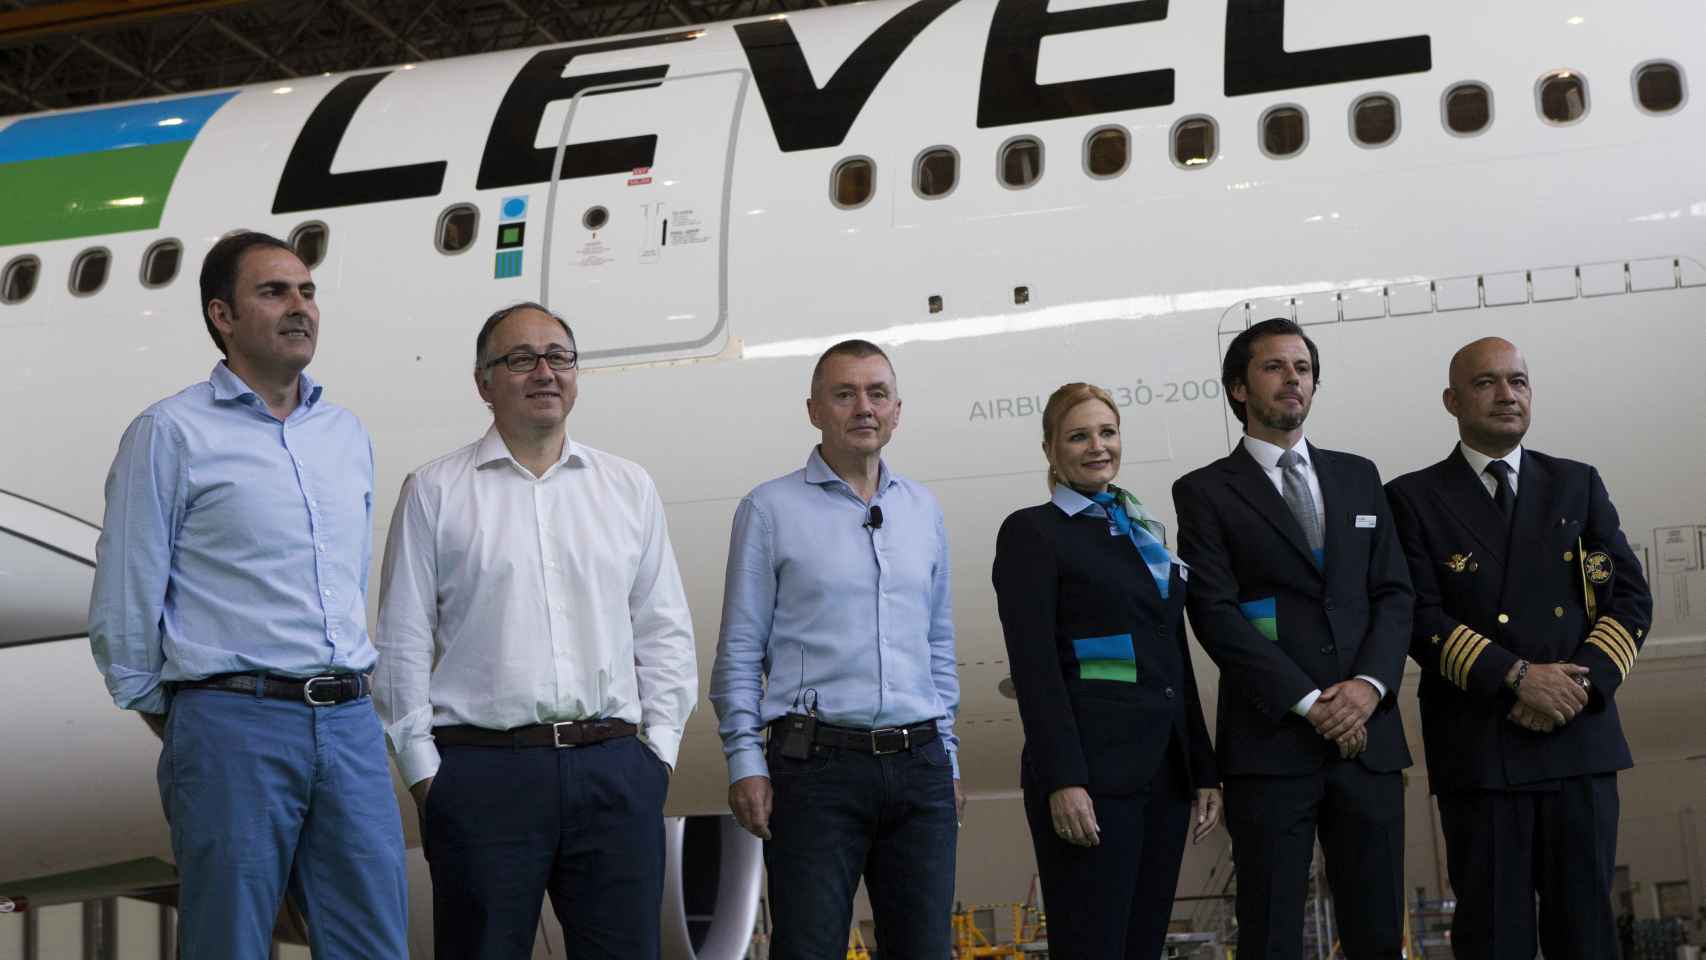 El consejero delegado de IAG, Willie Walsh (3i), el presidente de Iberia, Luis Gallego (2i), y el presidente de Vueling, Javier Sánchez-Prieto (i), junto a miembros de la tripulación.